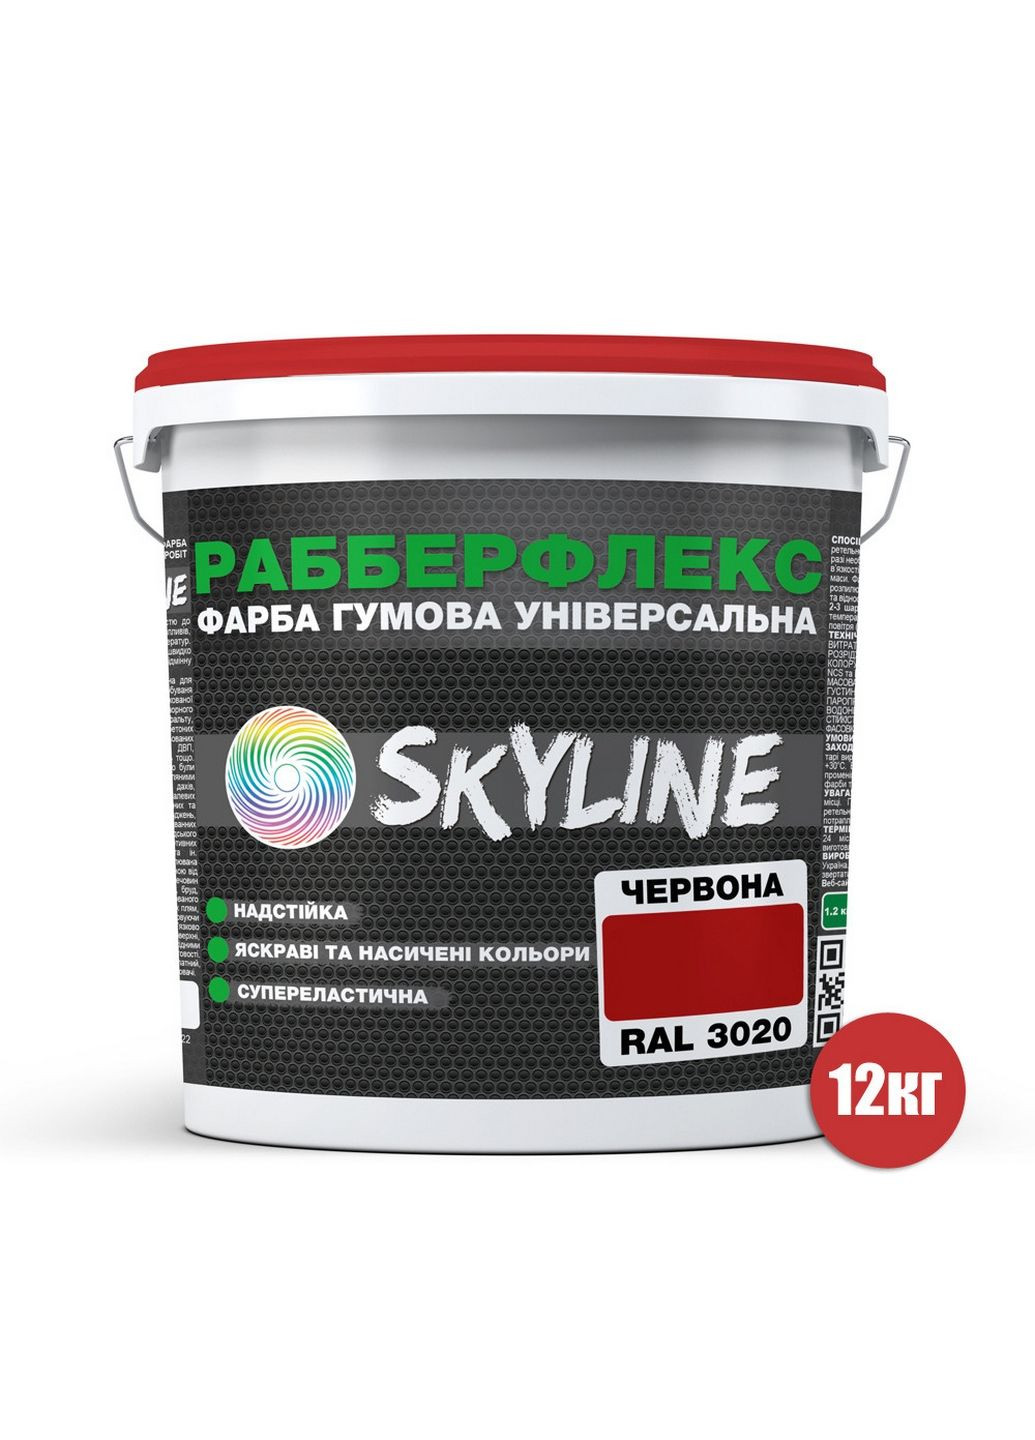 Надстійка фарба гумова супереластична «РабберФлекс» 12 кг SkyLine (289461378)